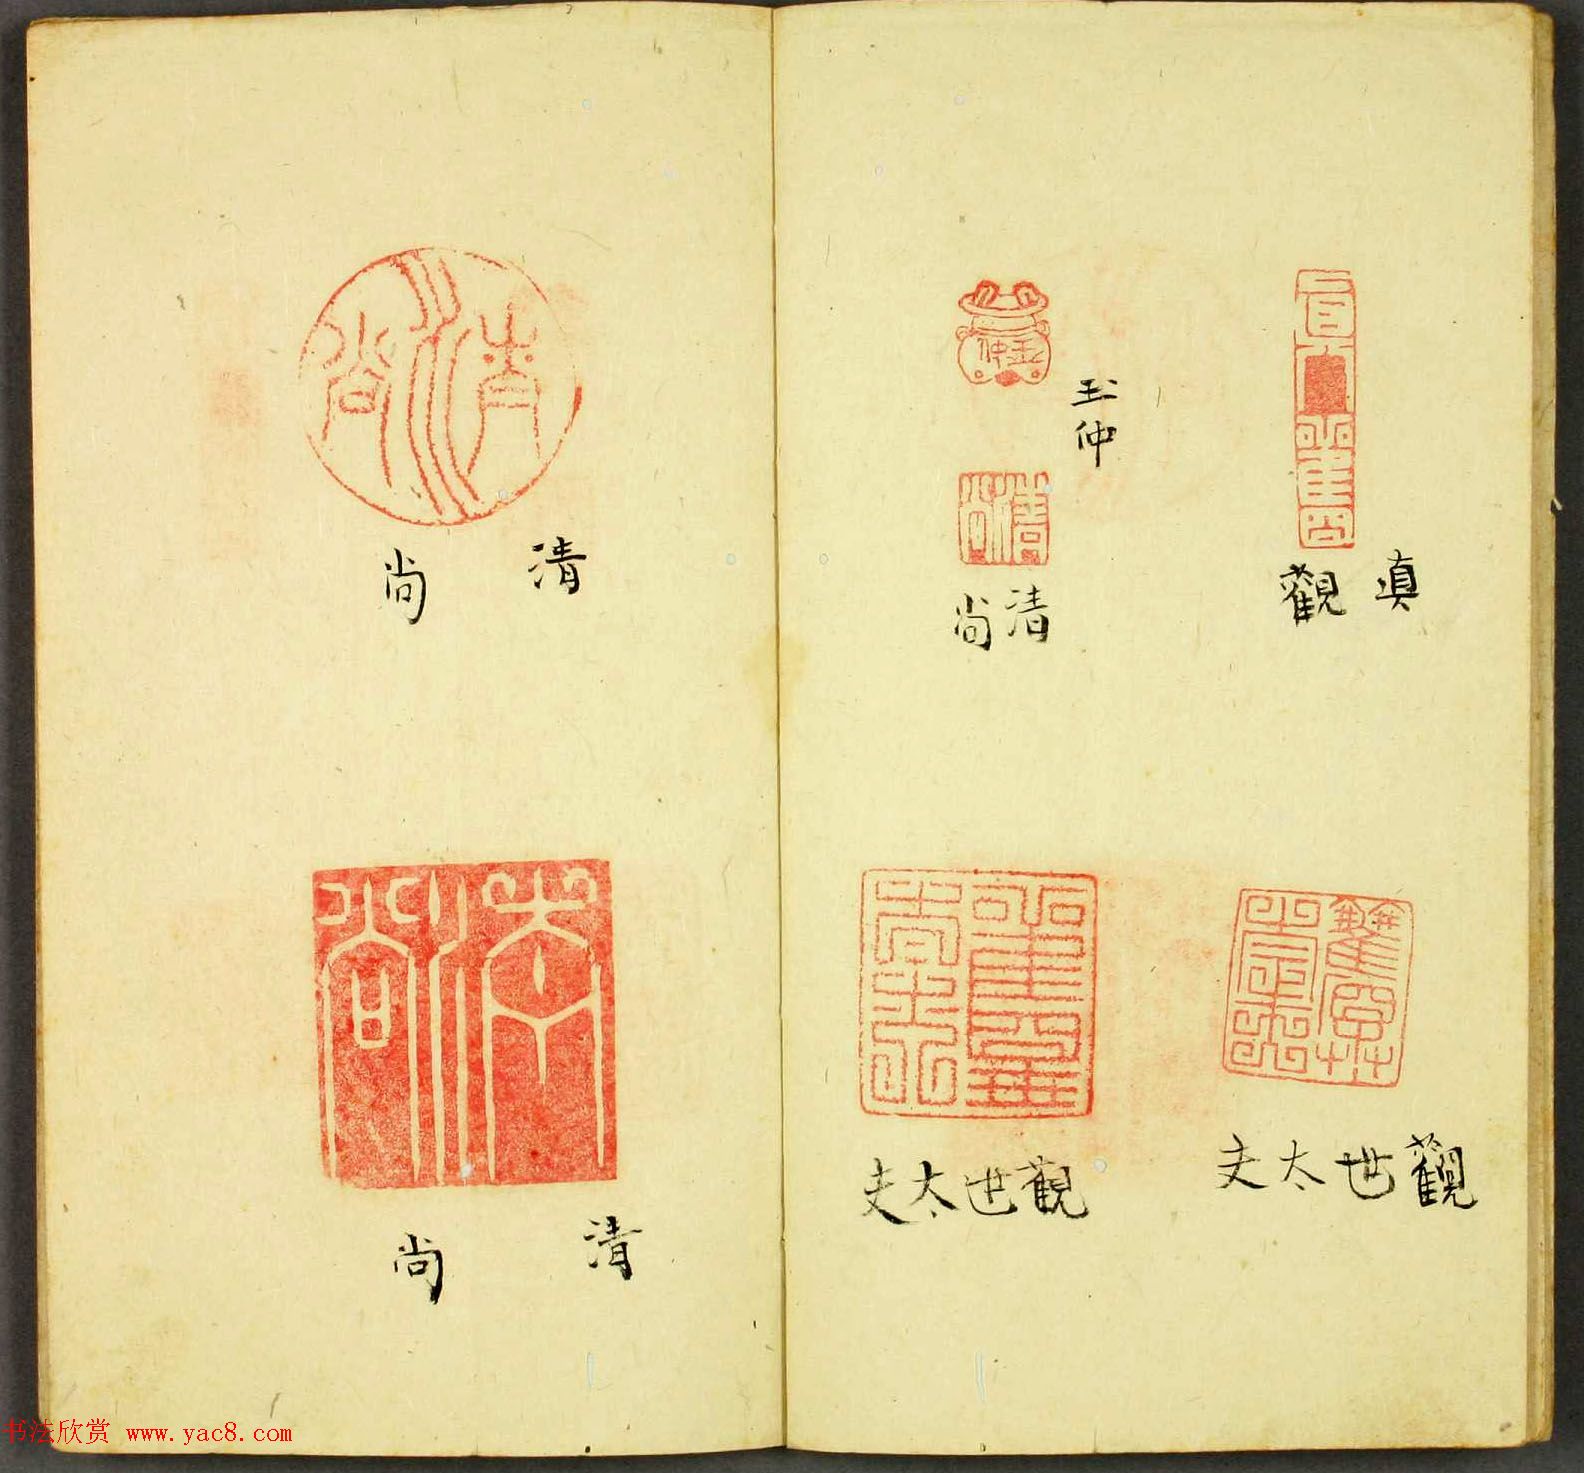 日本篆刻作品册页《弓町印谱》